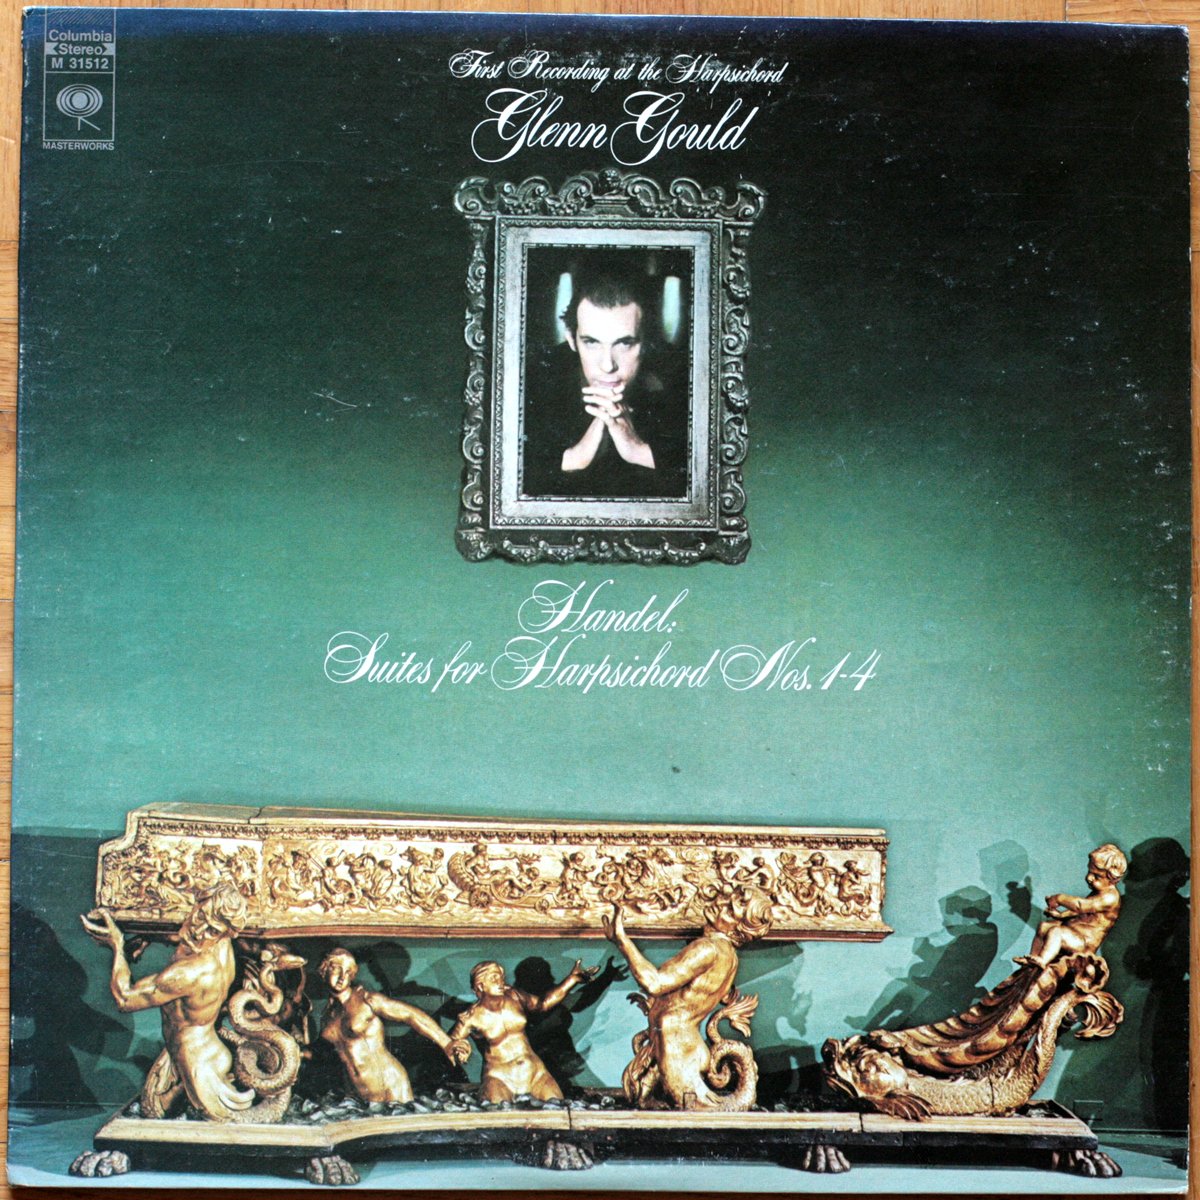 Handel • Suites pour clavecin n° 1 à 4 • Handel • Handel • Suites pour clavecin • Suites for harpsichord • N° 1 à 4 • CBS M 31512 • Glenn Gould